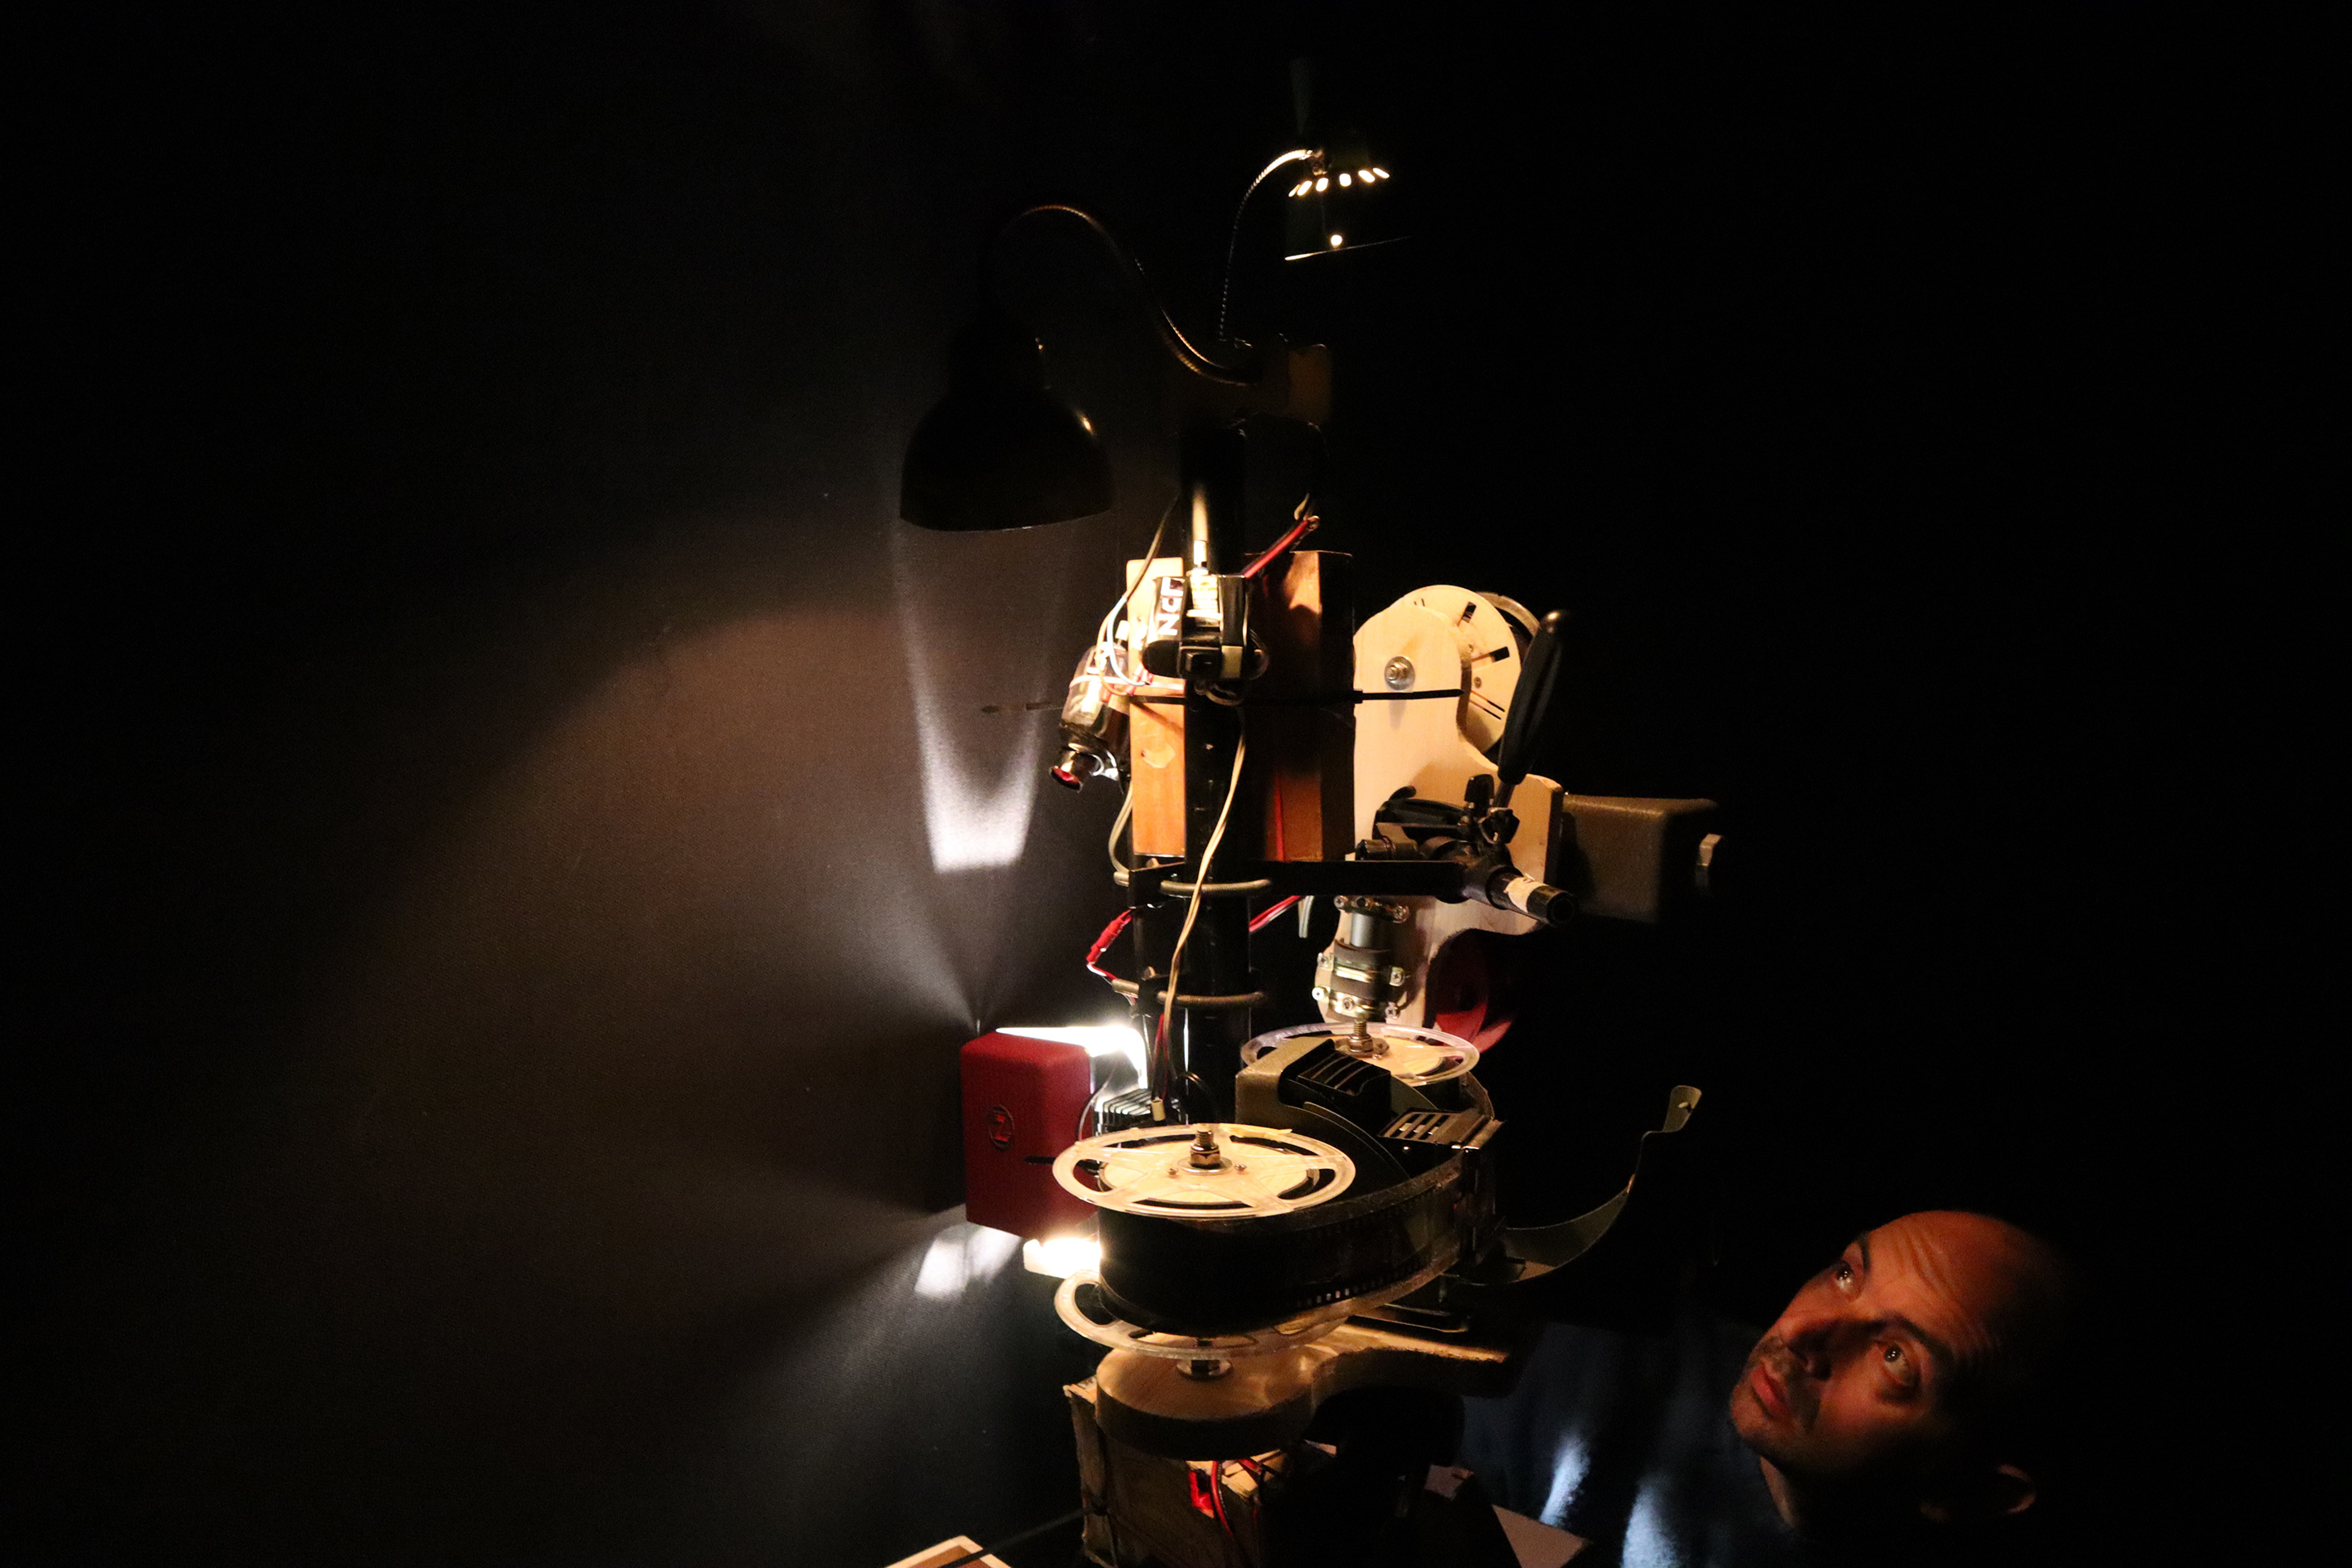 Ein multifunktionaler Apparat aus Spulen, Licht und kleinen Motoren wird von einem Mann betrachtet.